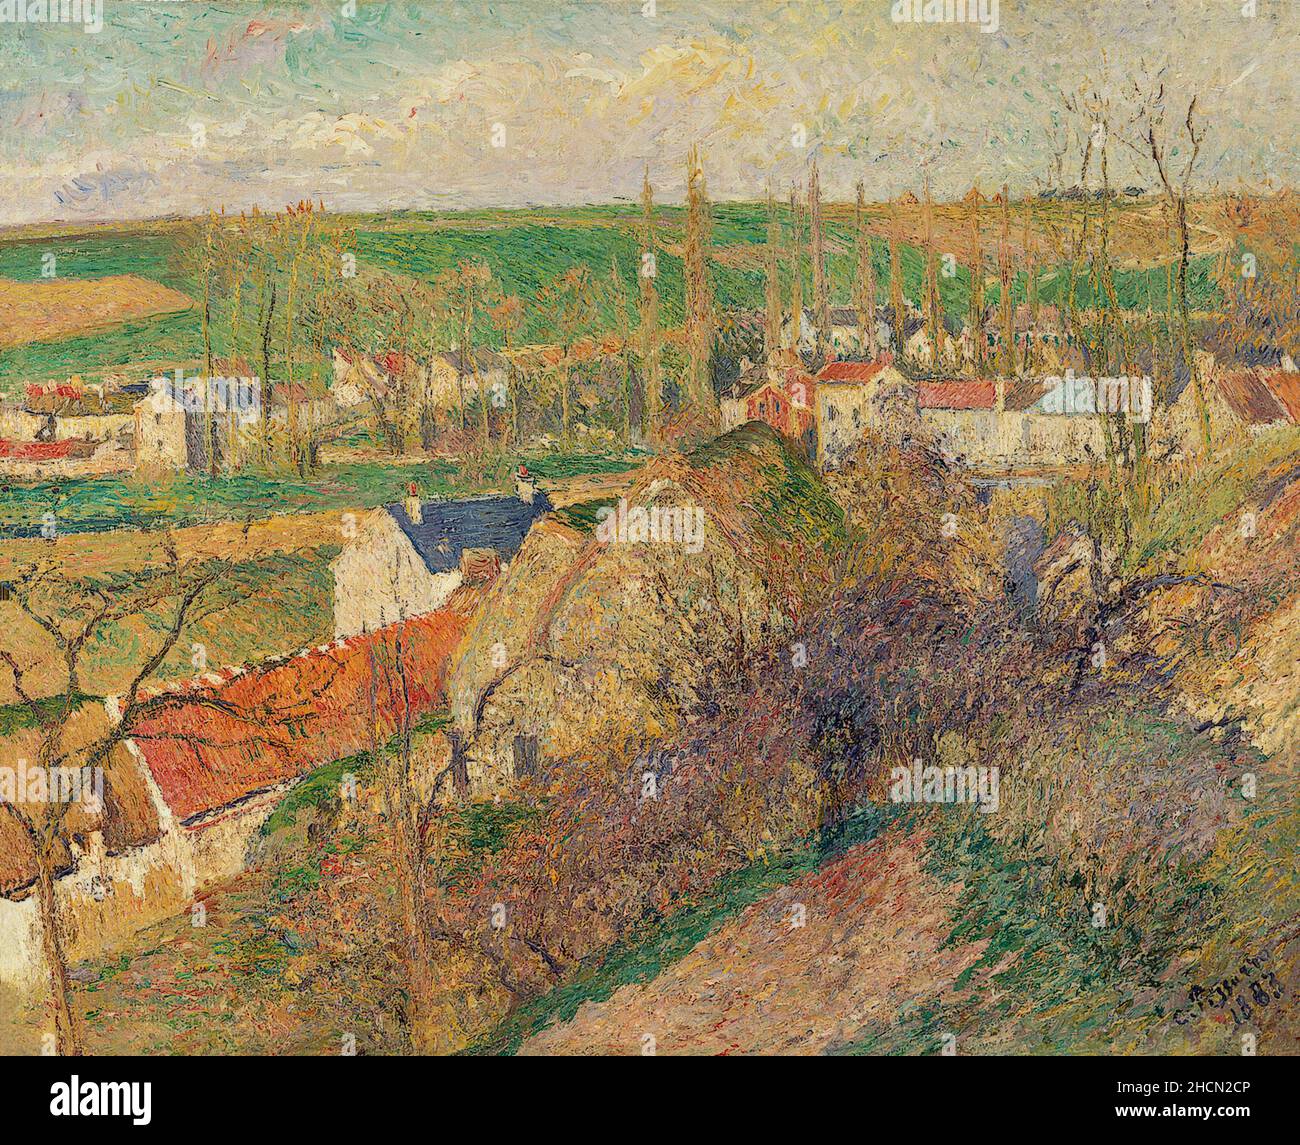 Le village d'Osny par le peintre impressionniste/post-impressionniste français Camille Pisarro Banque D'Images